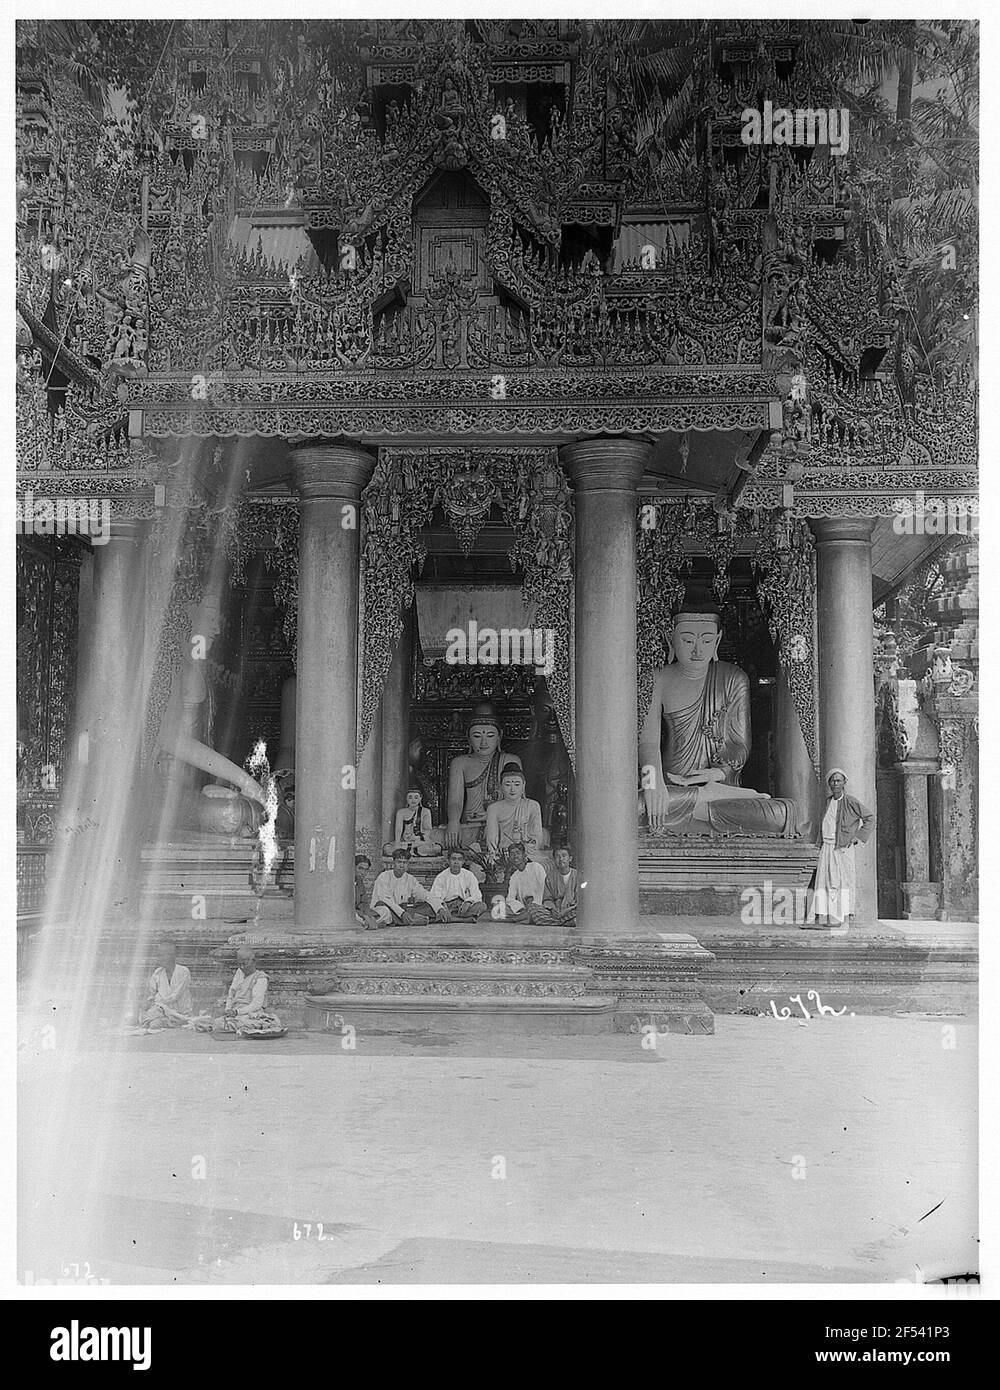 Rangonn, Birmanie: Scène dans la Pagode Shwedagon. Les jeunes sont encadrés par deux piliers, outre des colonnes, grande statue de Bouddha avec local; 5 jeunes hommes assis dans le siège de coupe contre Buddhastatuen sous le toit de pilier de la pagode Schwedagon Banque D'Images